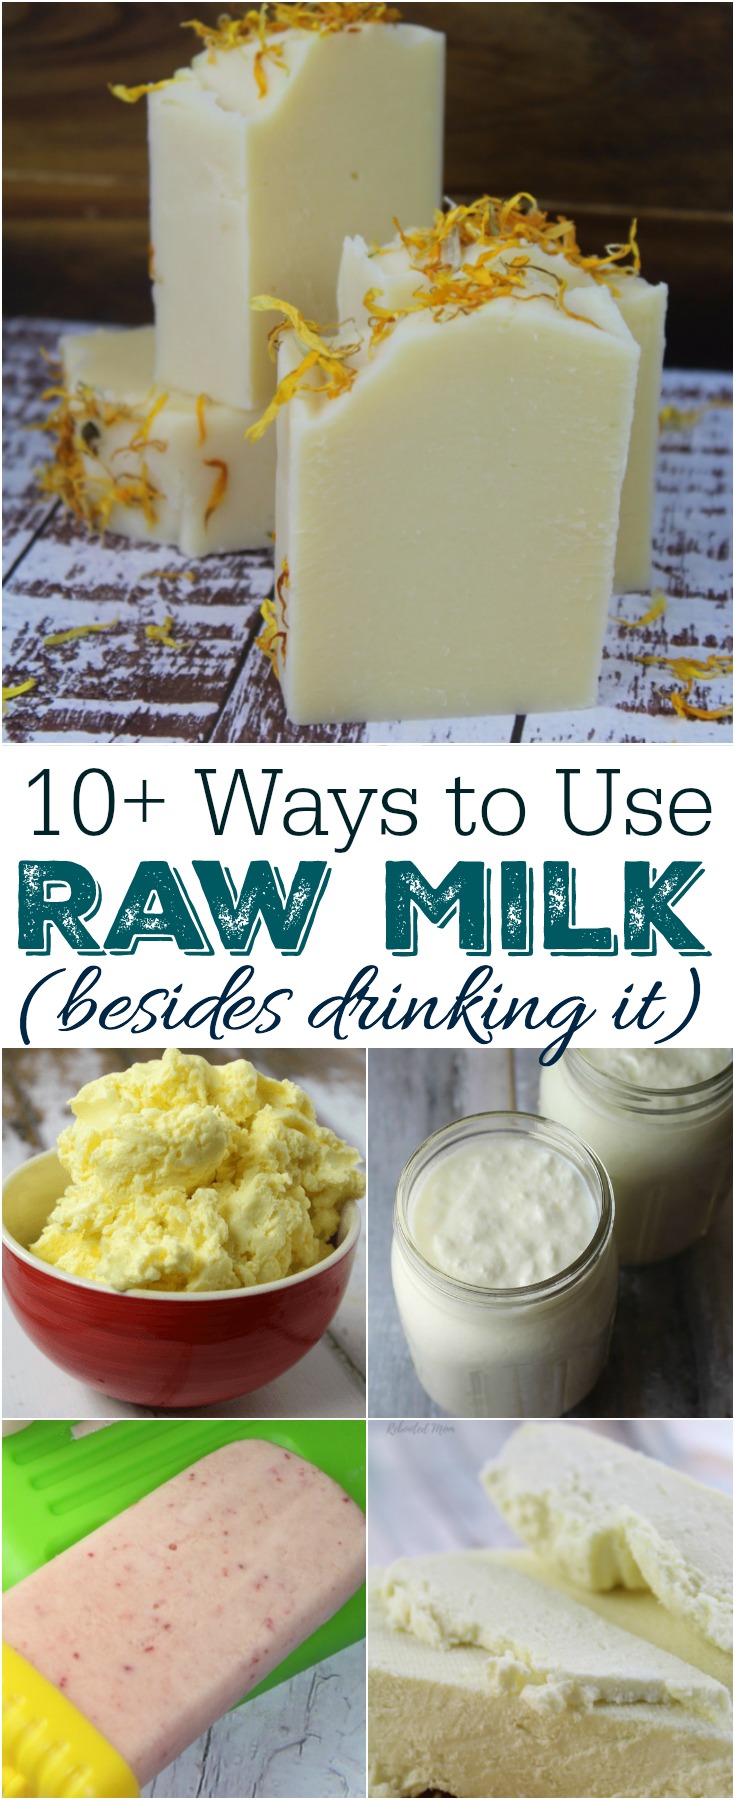 10+ Ways to Use Raw Milk